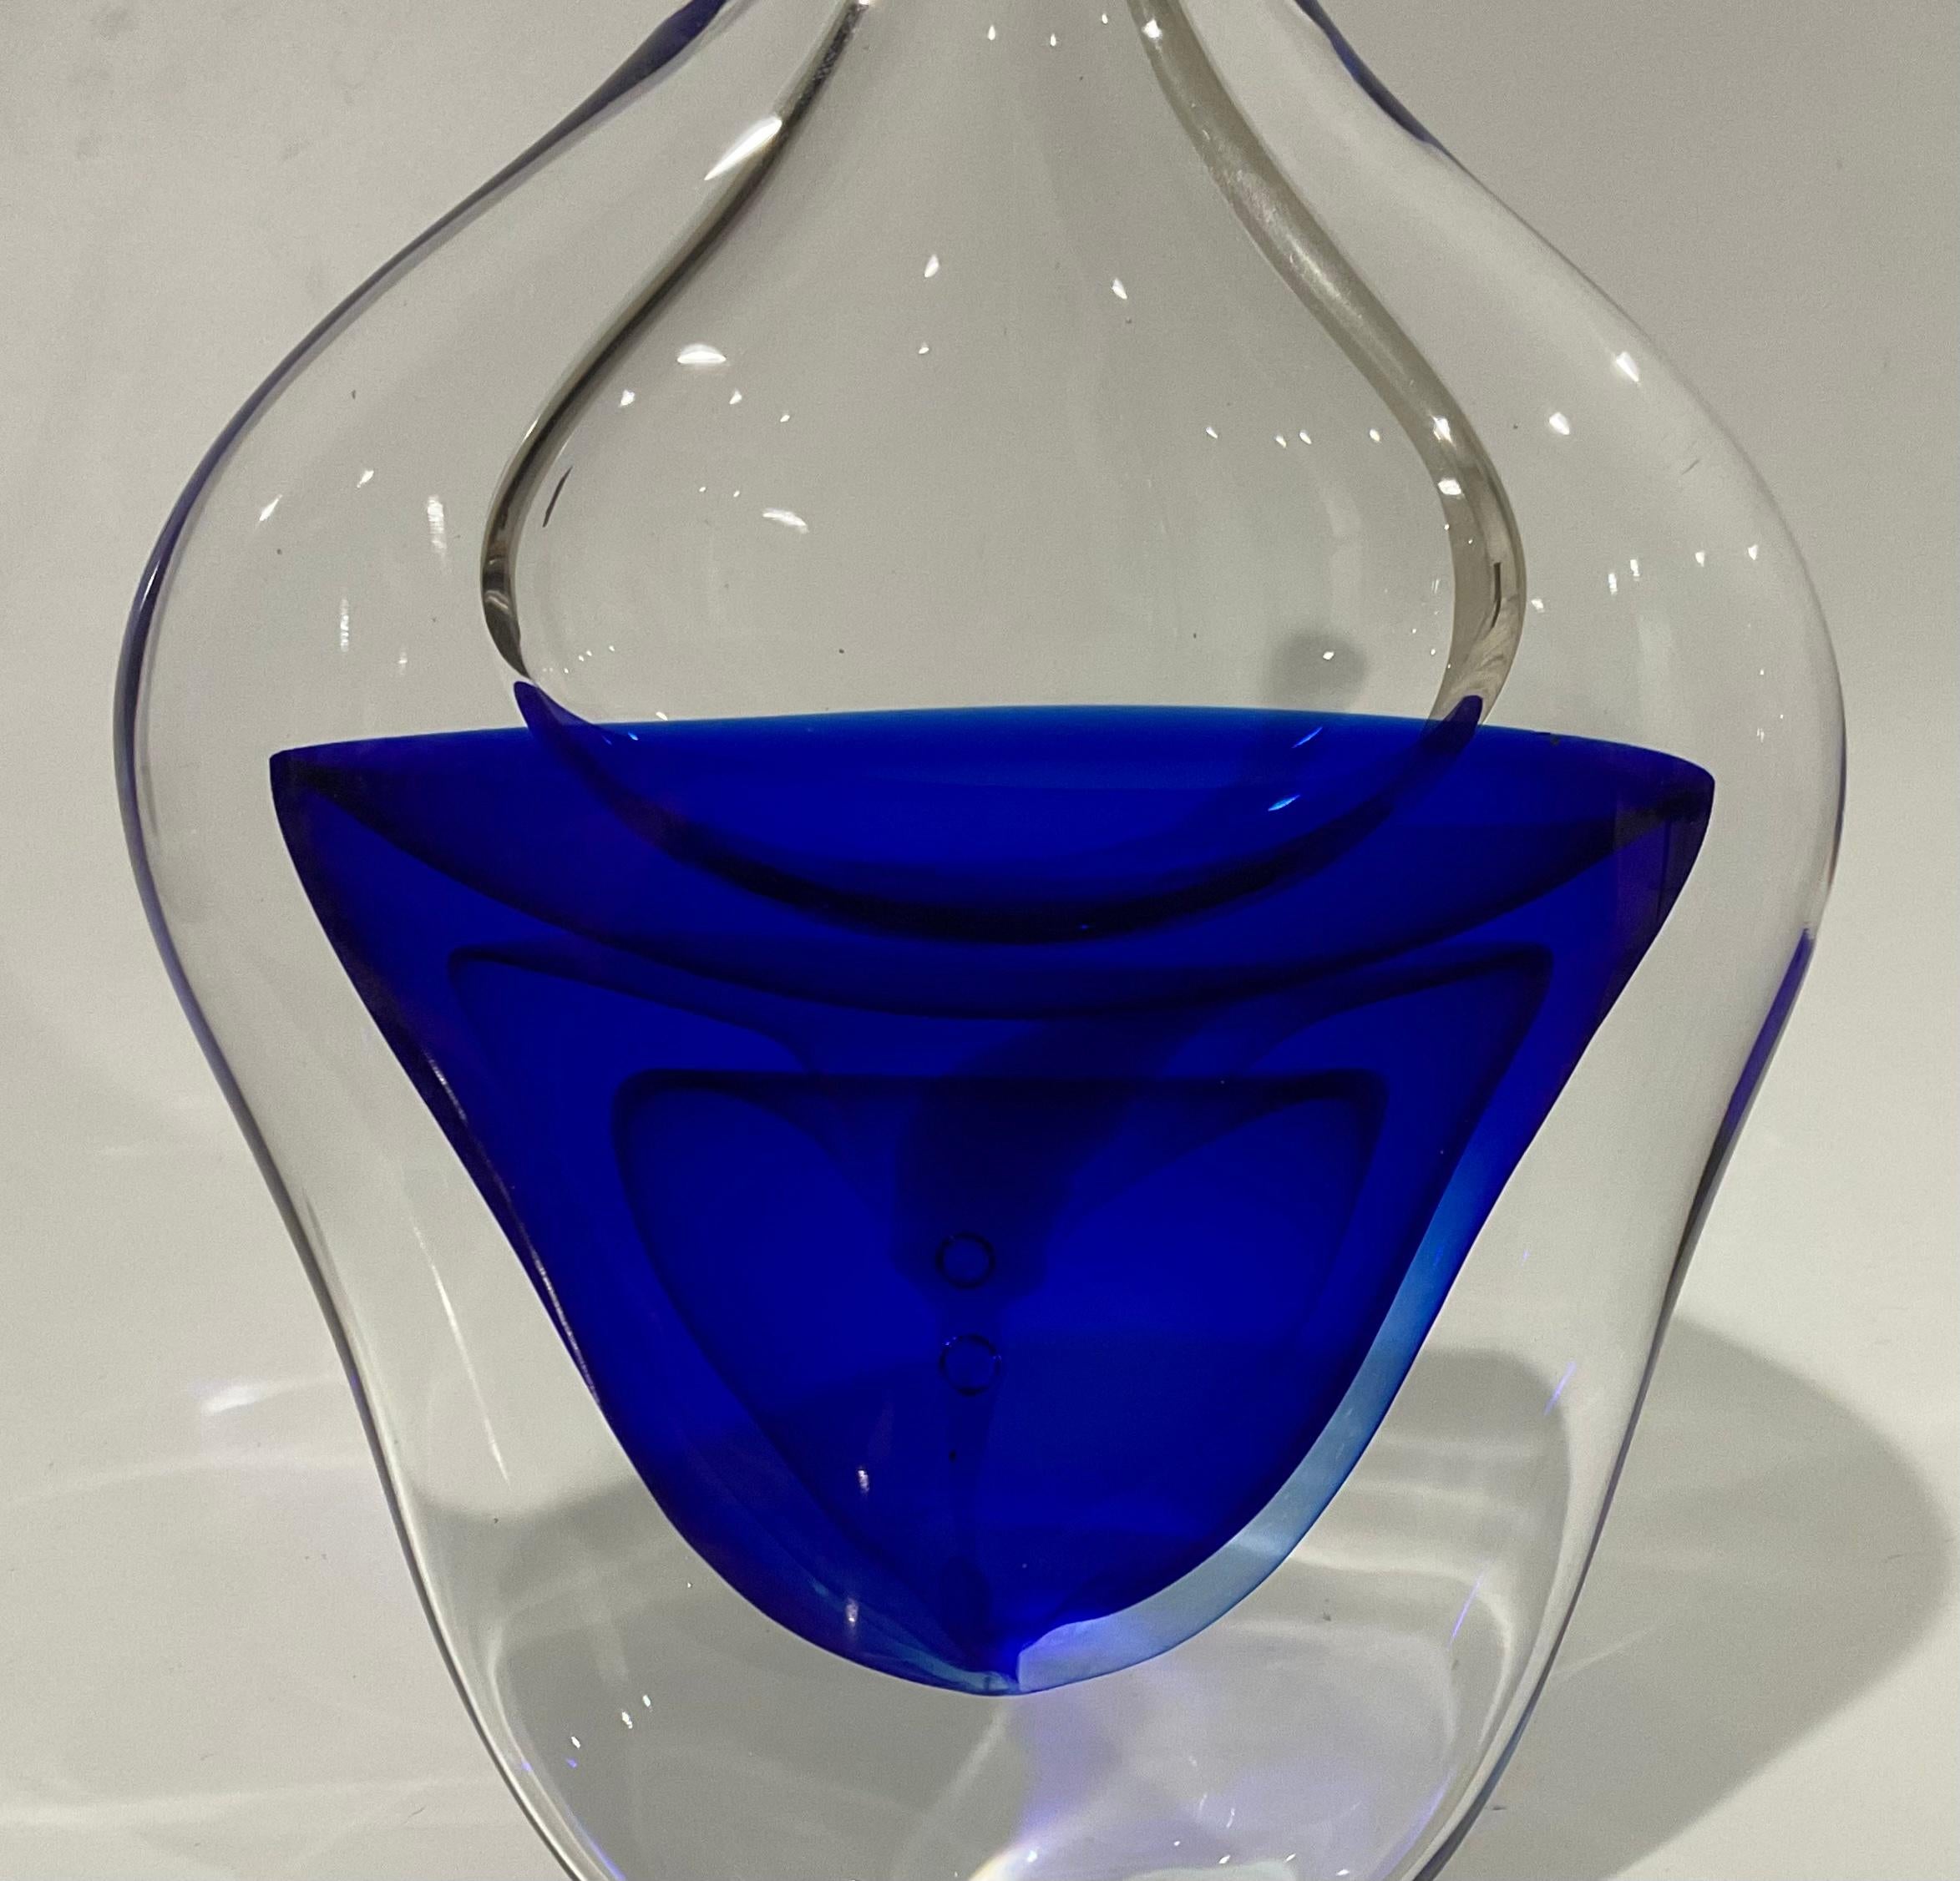 Antonio Da Ros Signed Cenedese Murano Glas Vase Circa 1960's Fabrik in Schrift auf dem Boden unterzeichnet. Die Vase stammt aus den 1960er Jahren. Mehrschichtiges Blau, umhüllt von Klarsichtfolie. Seltene Vase, die sich in jedem Interieur sehen